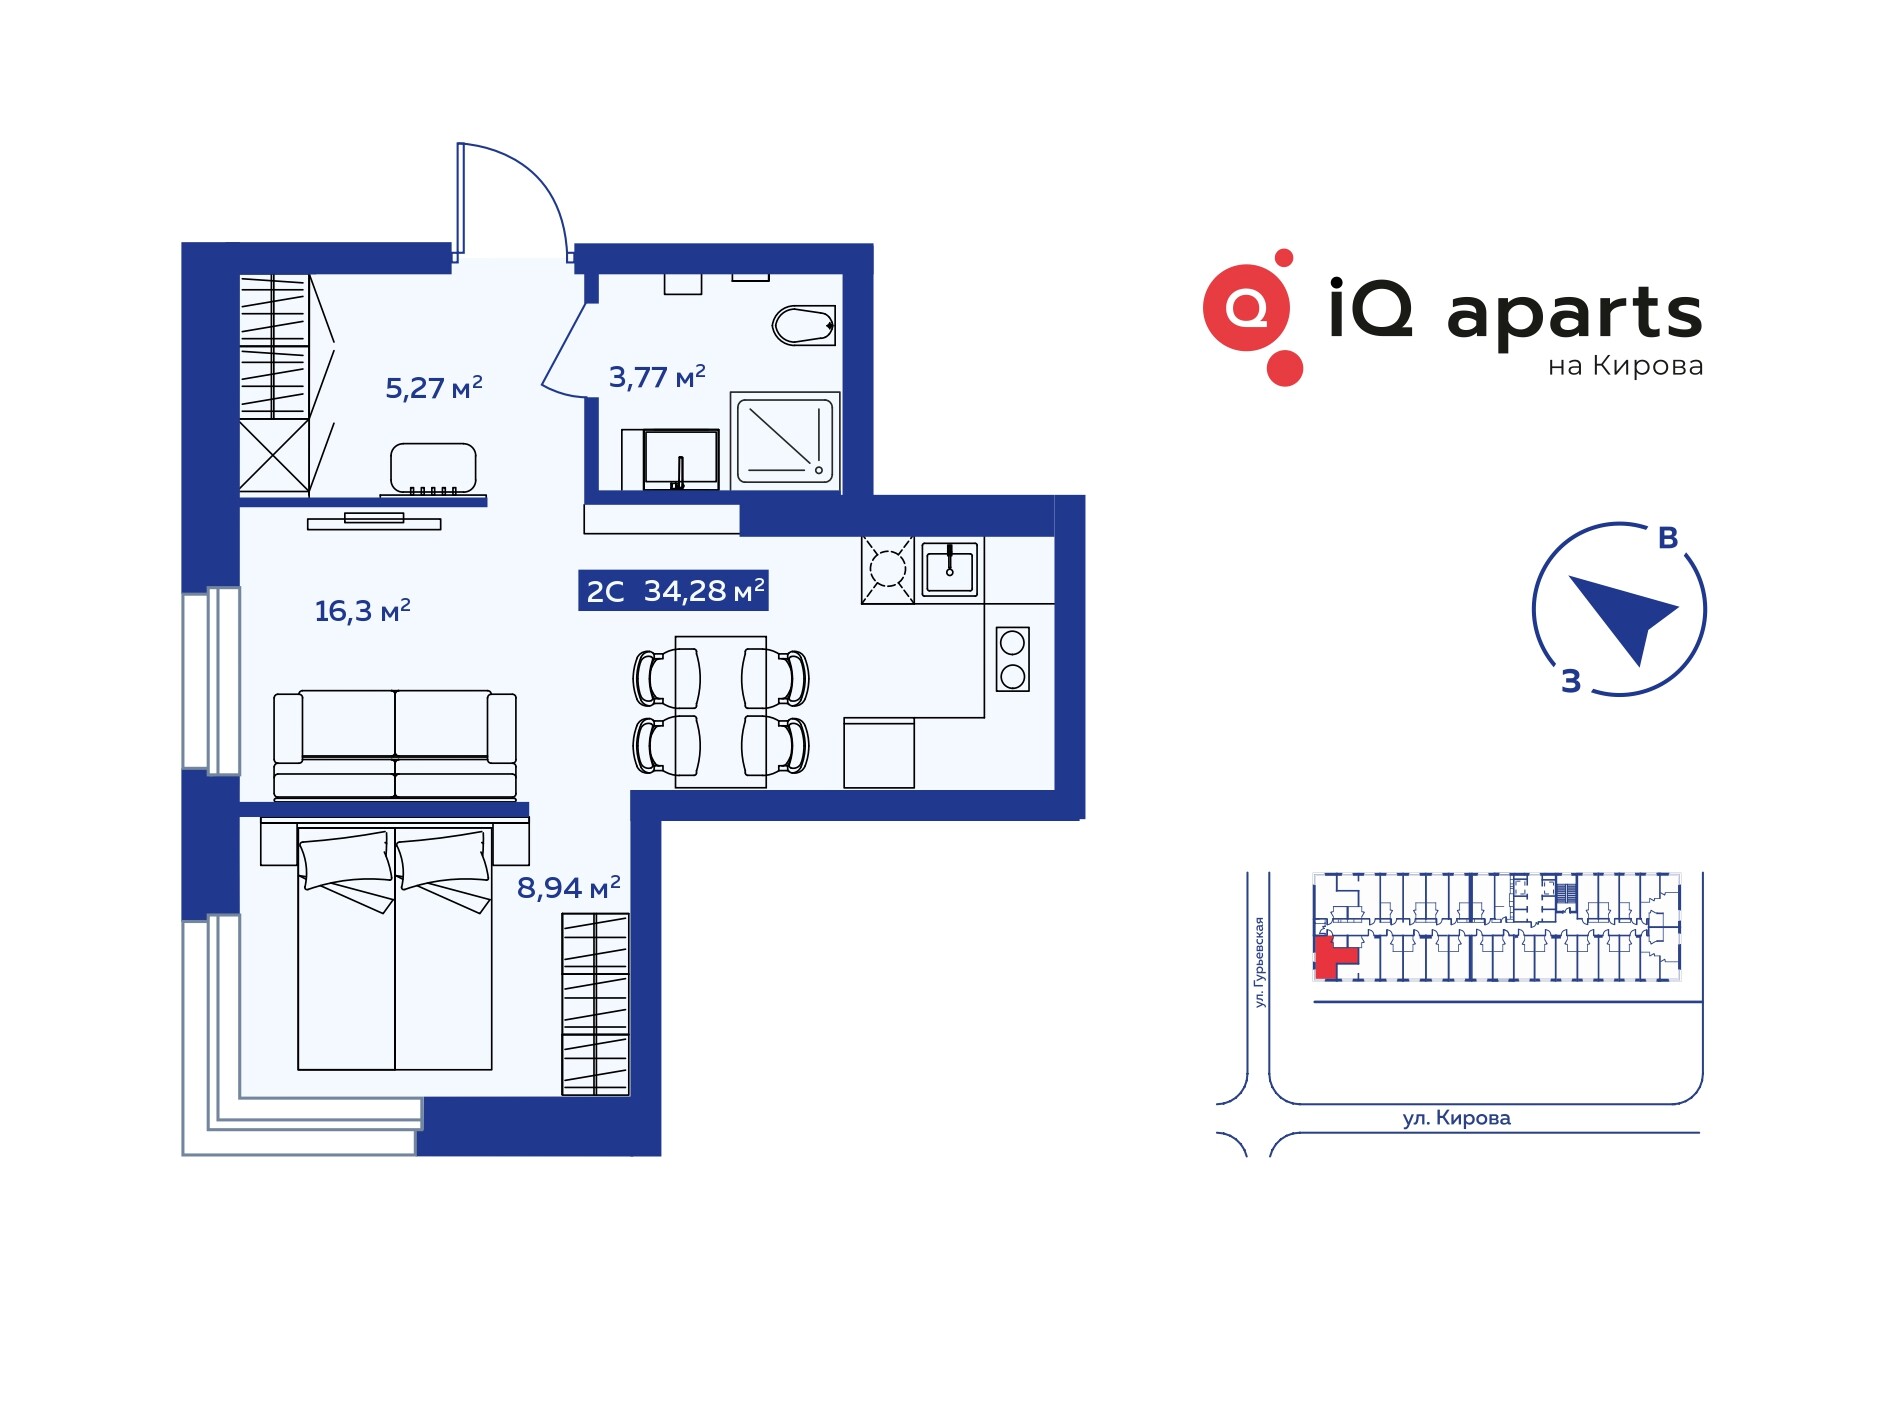 2-комнатная квартира 33.92м2 ЖК IQ Aparts